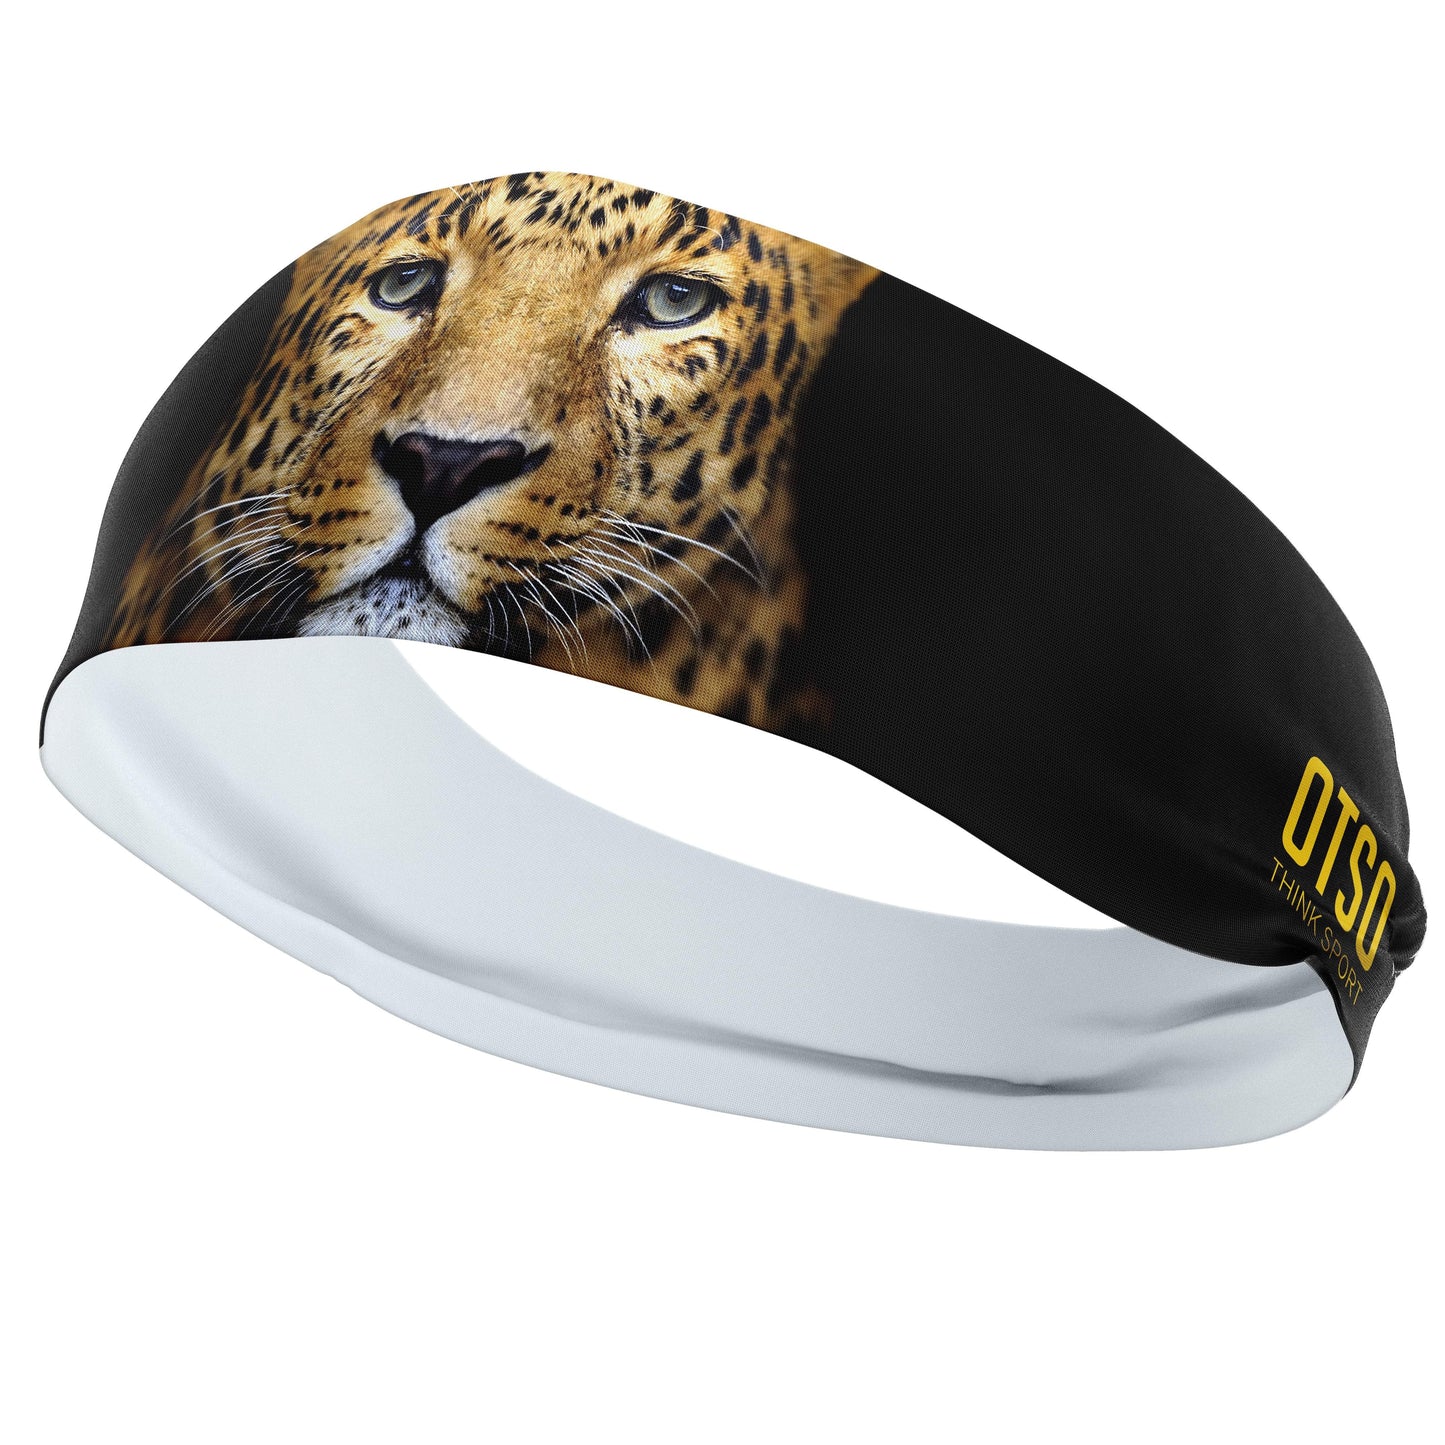 Headband Otso de 12 centímetros de grosor y con el diseño de un leopardo. El producto es unisex y de talla única